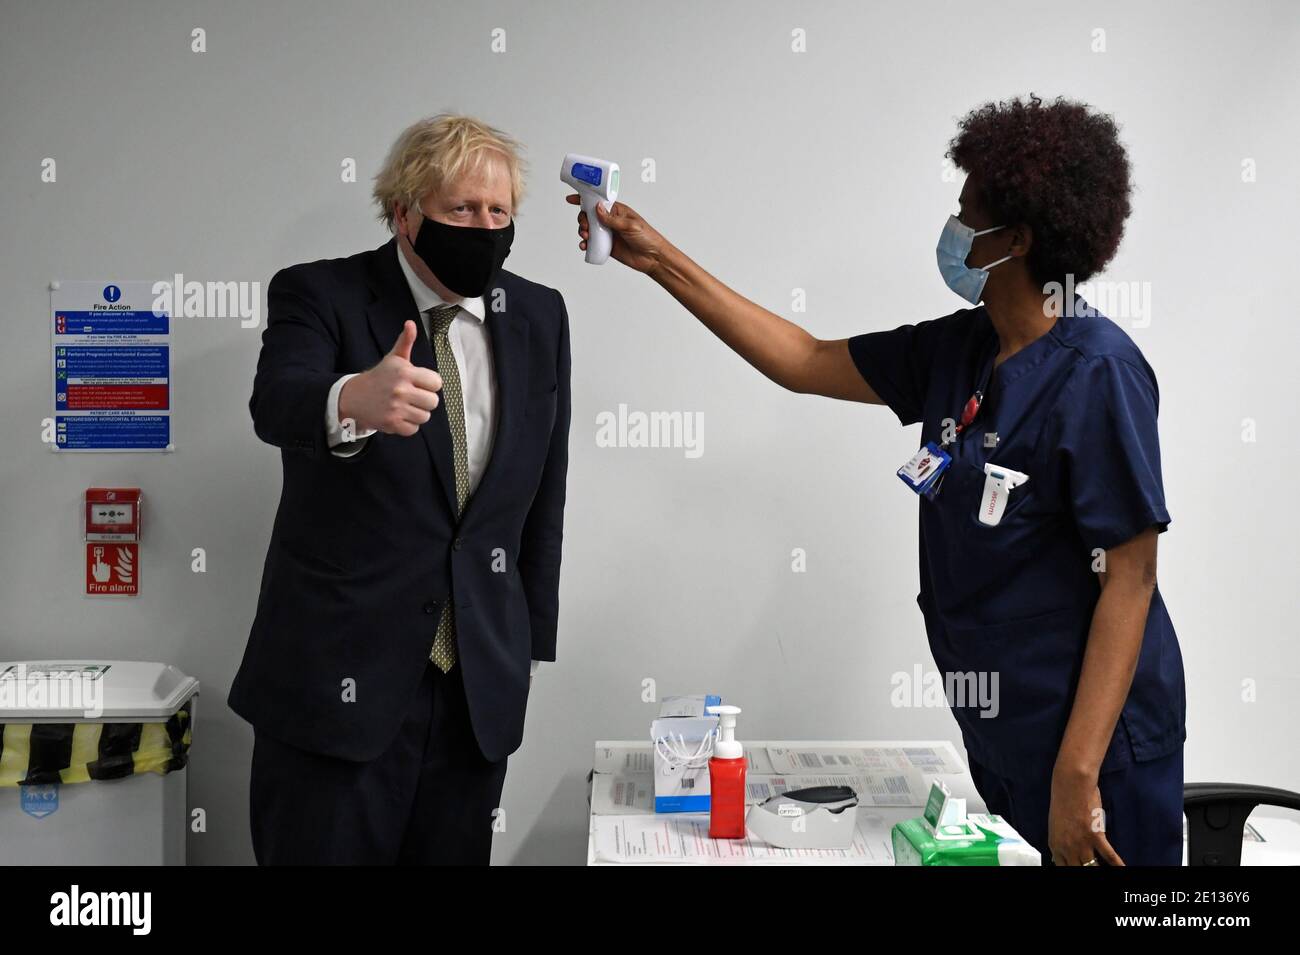 Le Premier ministre Boris Johnson donne un pouce alors qu'il a vérifié sa température lors d'une visite à l'hôpital Chase Farm dans le nord de Londres, Le jour où le NHS augmente son programme de vaccination avec 530,000 doses du nouveau vaccin Covid-19 d'Oxford/AstraZeneca, disponible pour le déploiement au Royaume-Uni. Banque D'Images